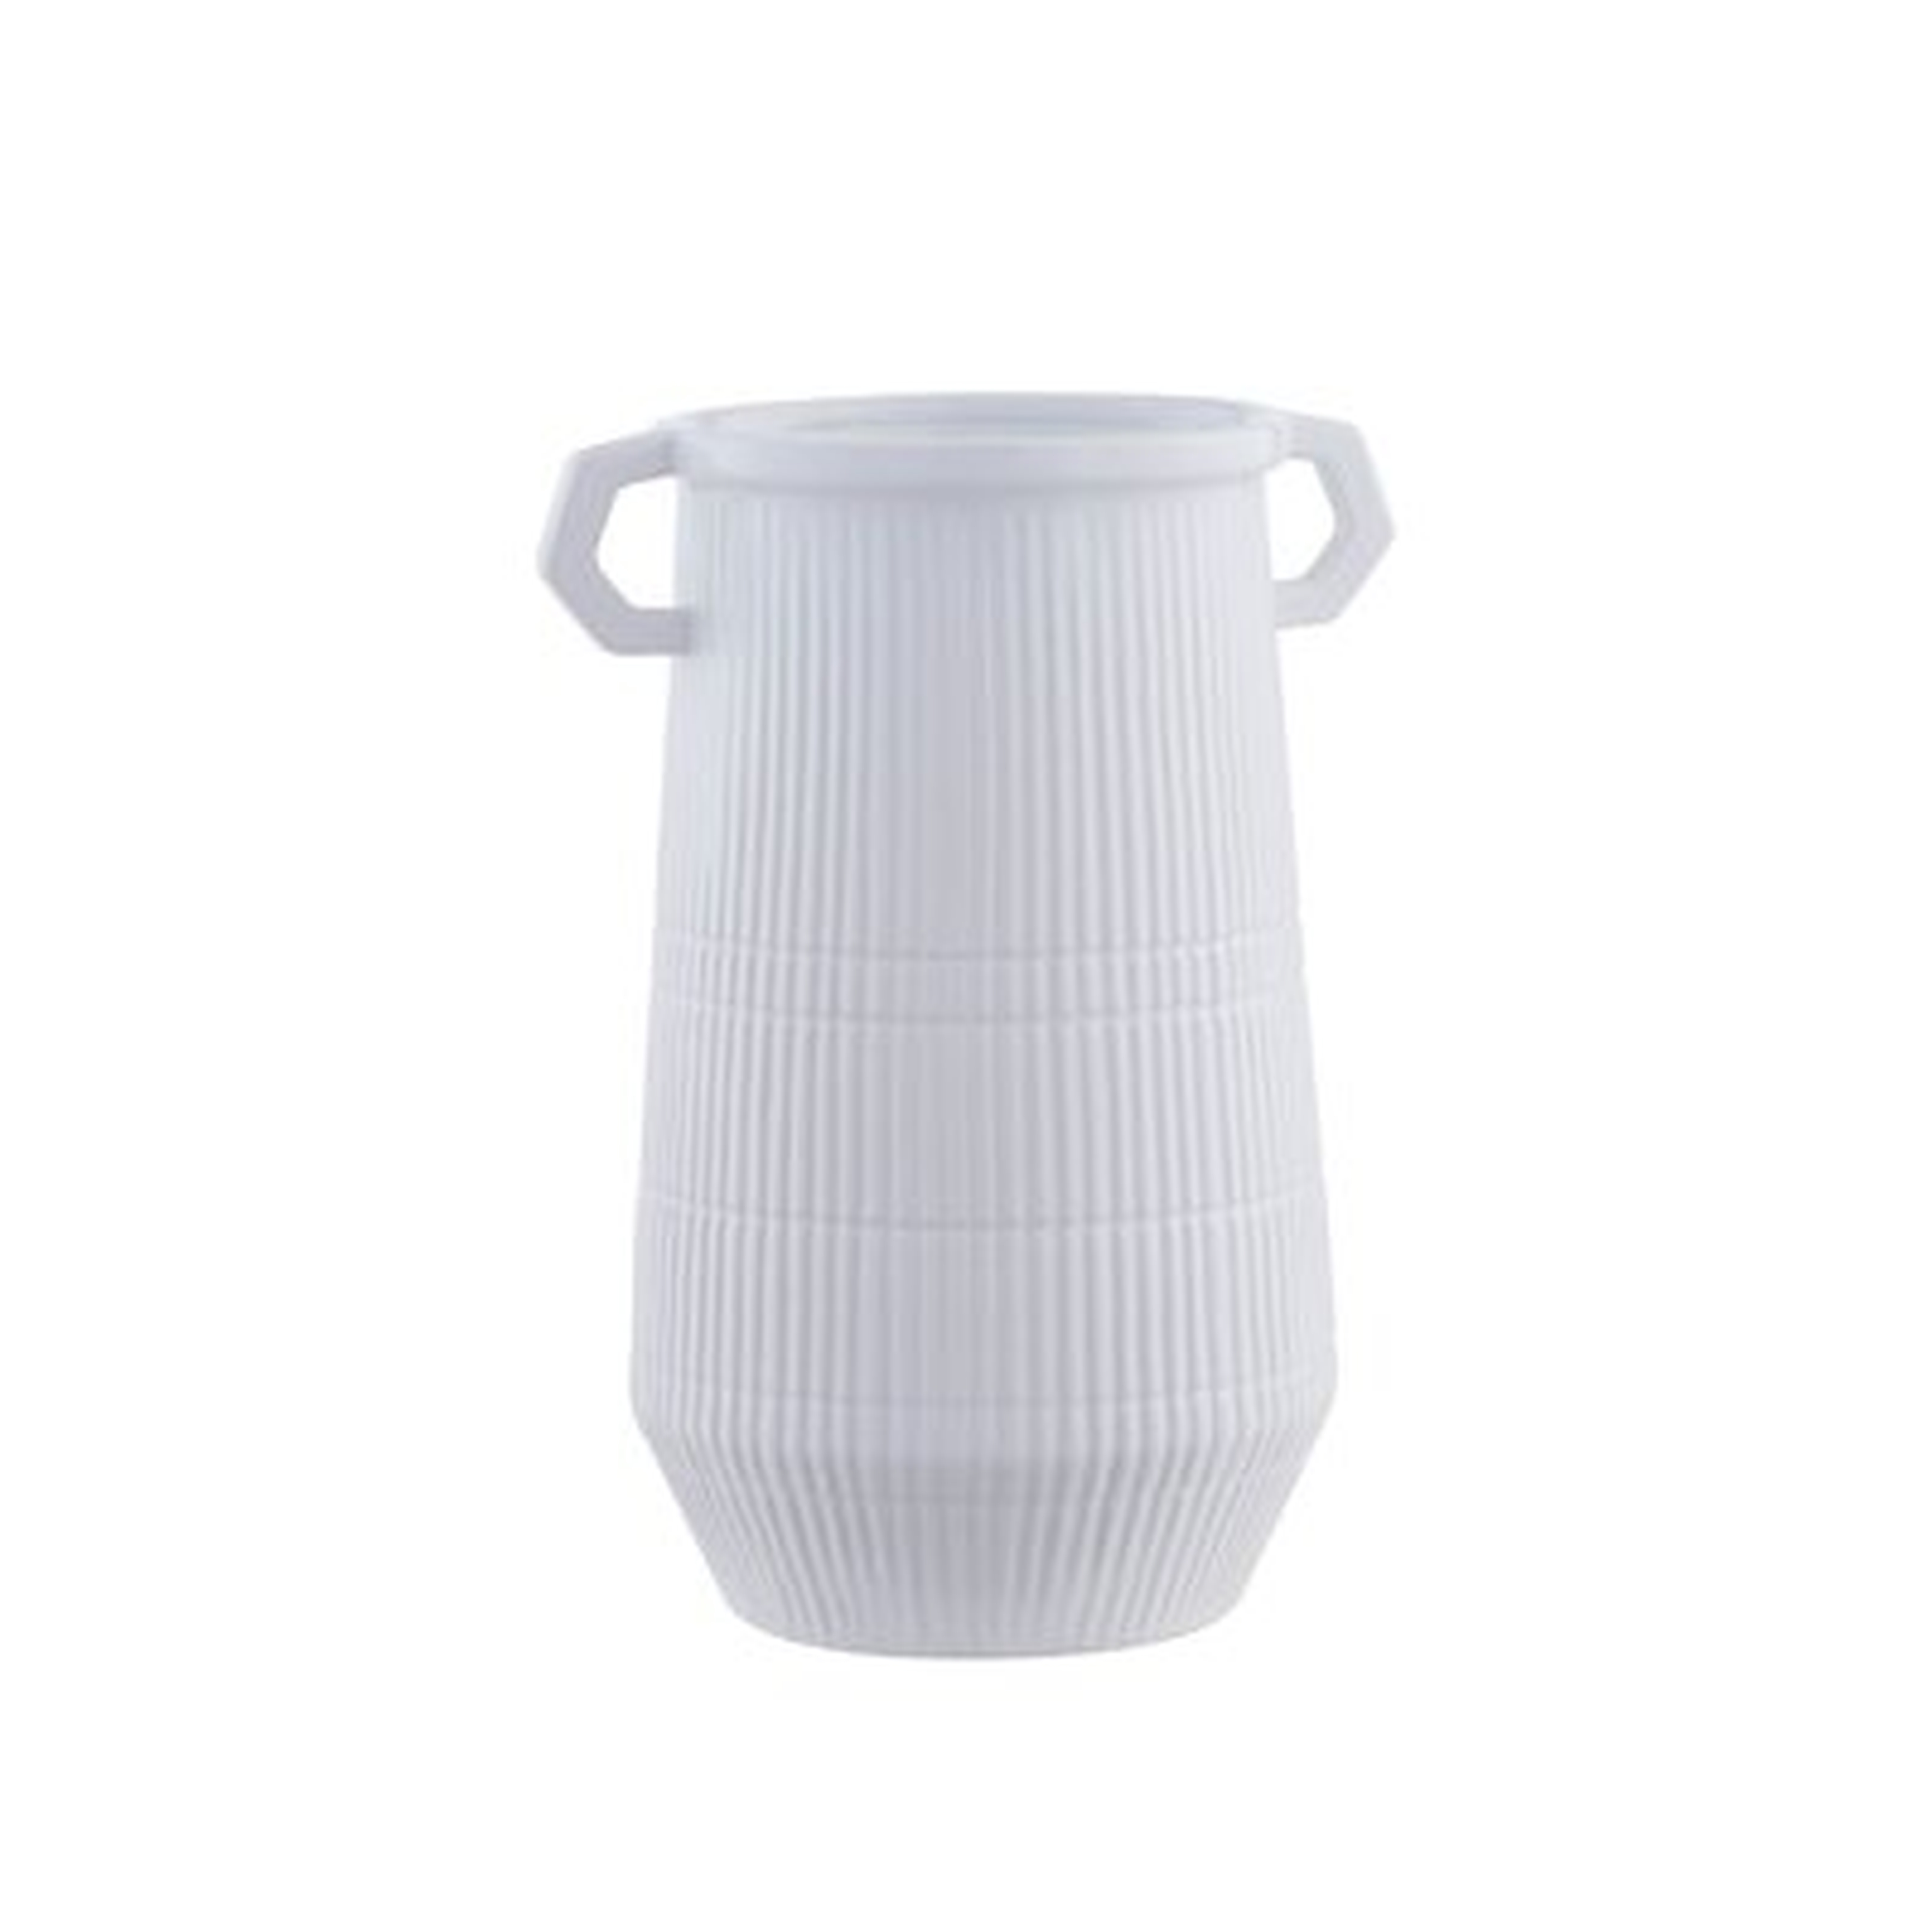 Dapper Deco White Double Handle Vase - Wayfair